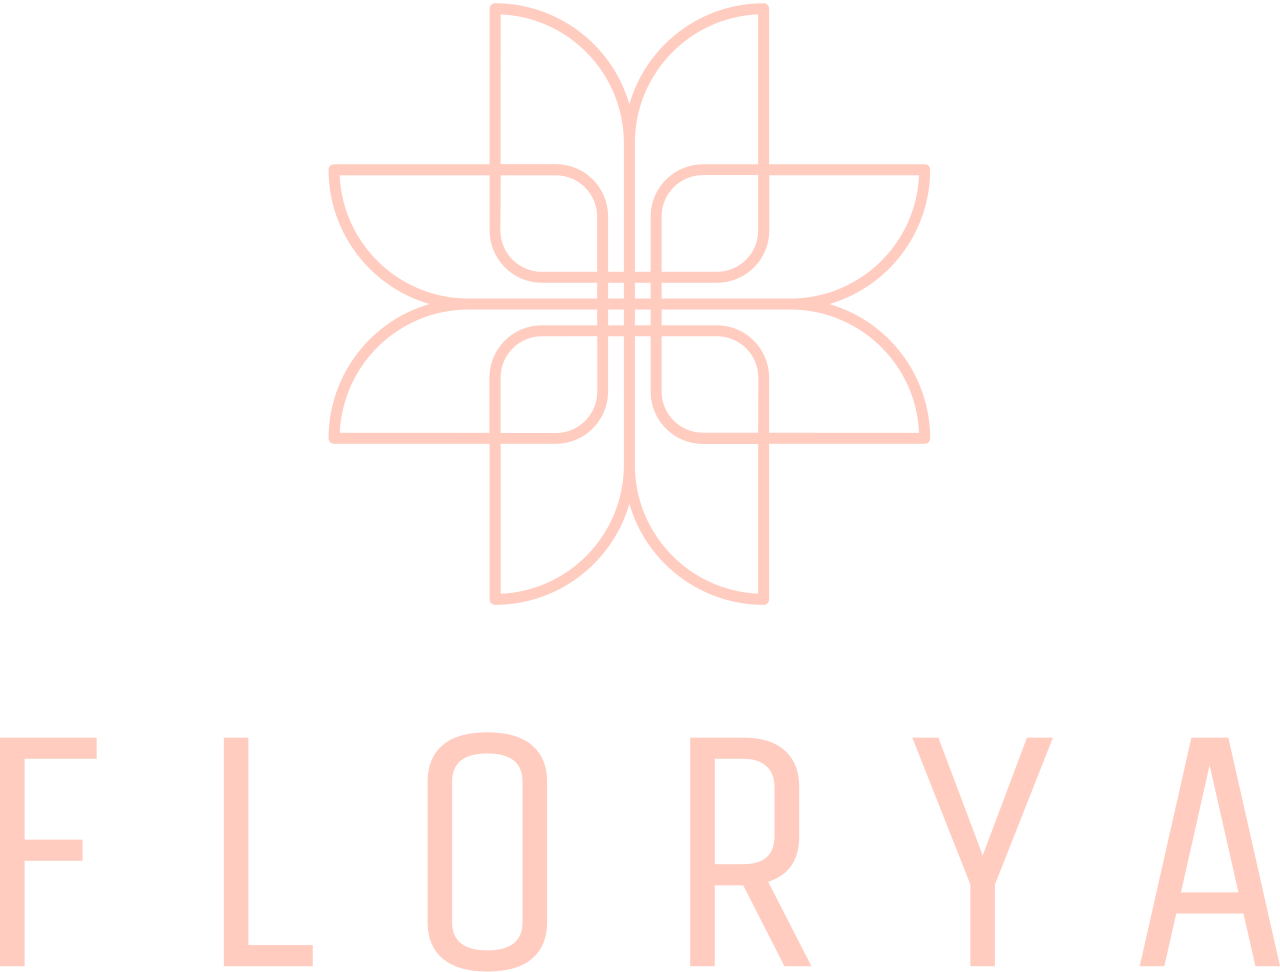 FLORYA's logo